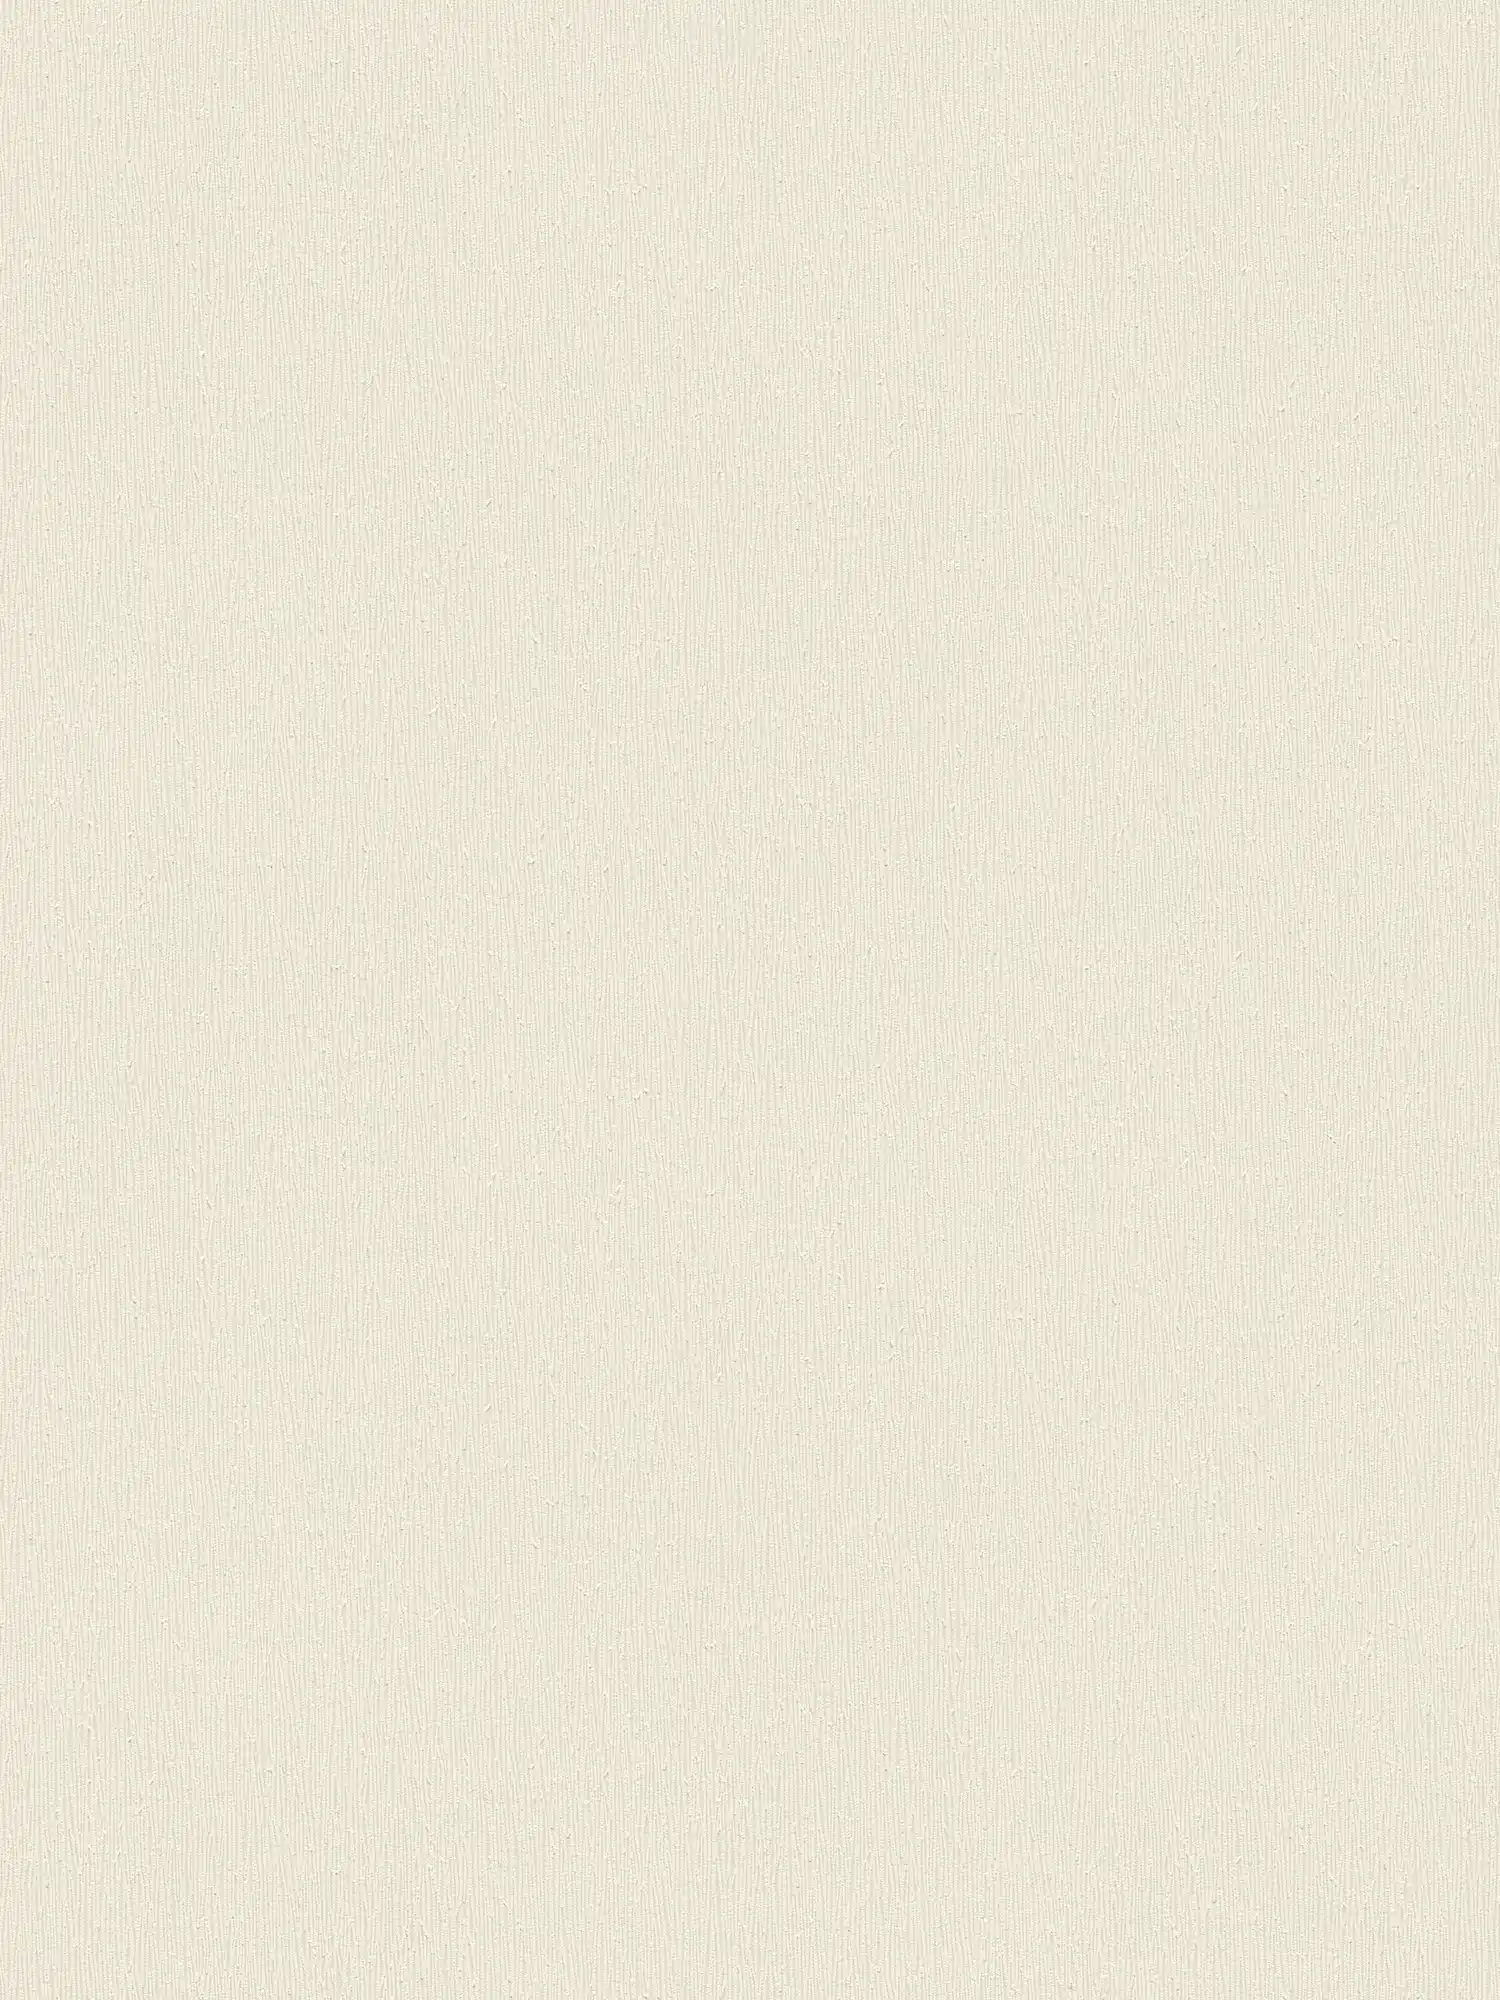 Cremefarbene Vliestapete mit einfarbigem Strukturdesign – Creme, Weiß
